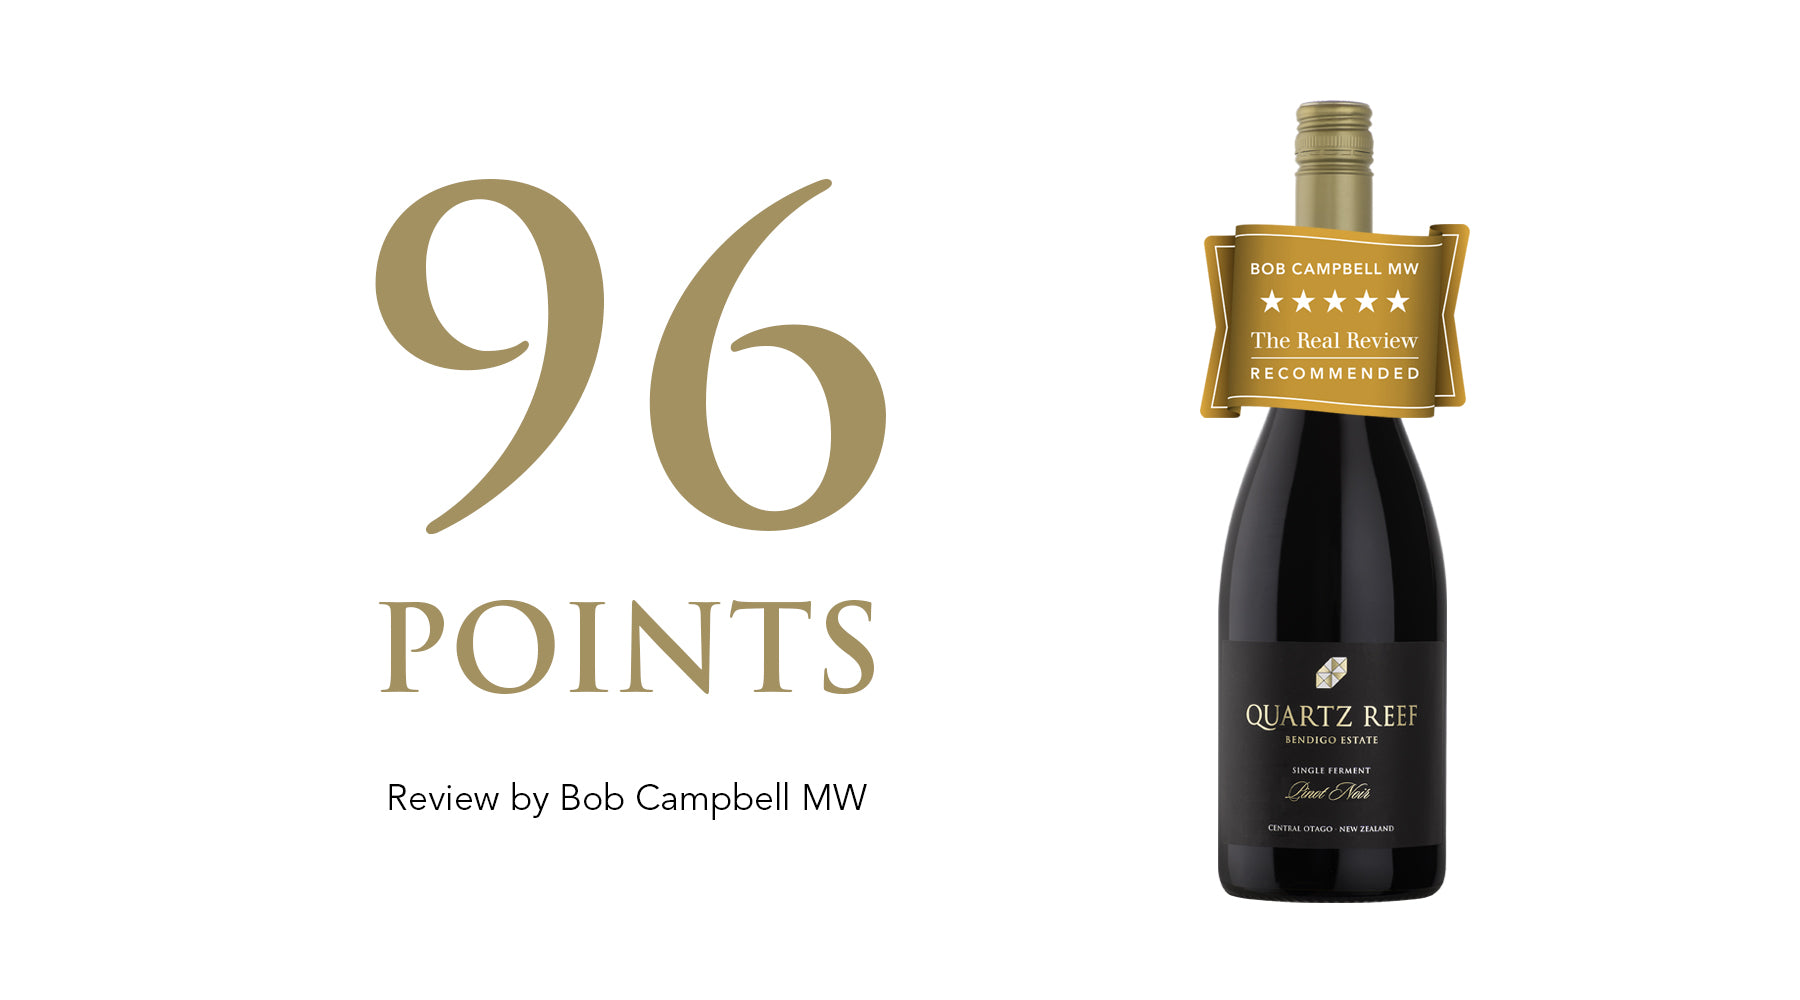 Bendigo Estate Pinot Noir 2018 - Awarded 96 Points